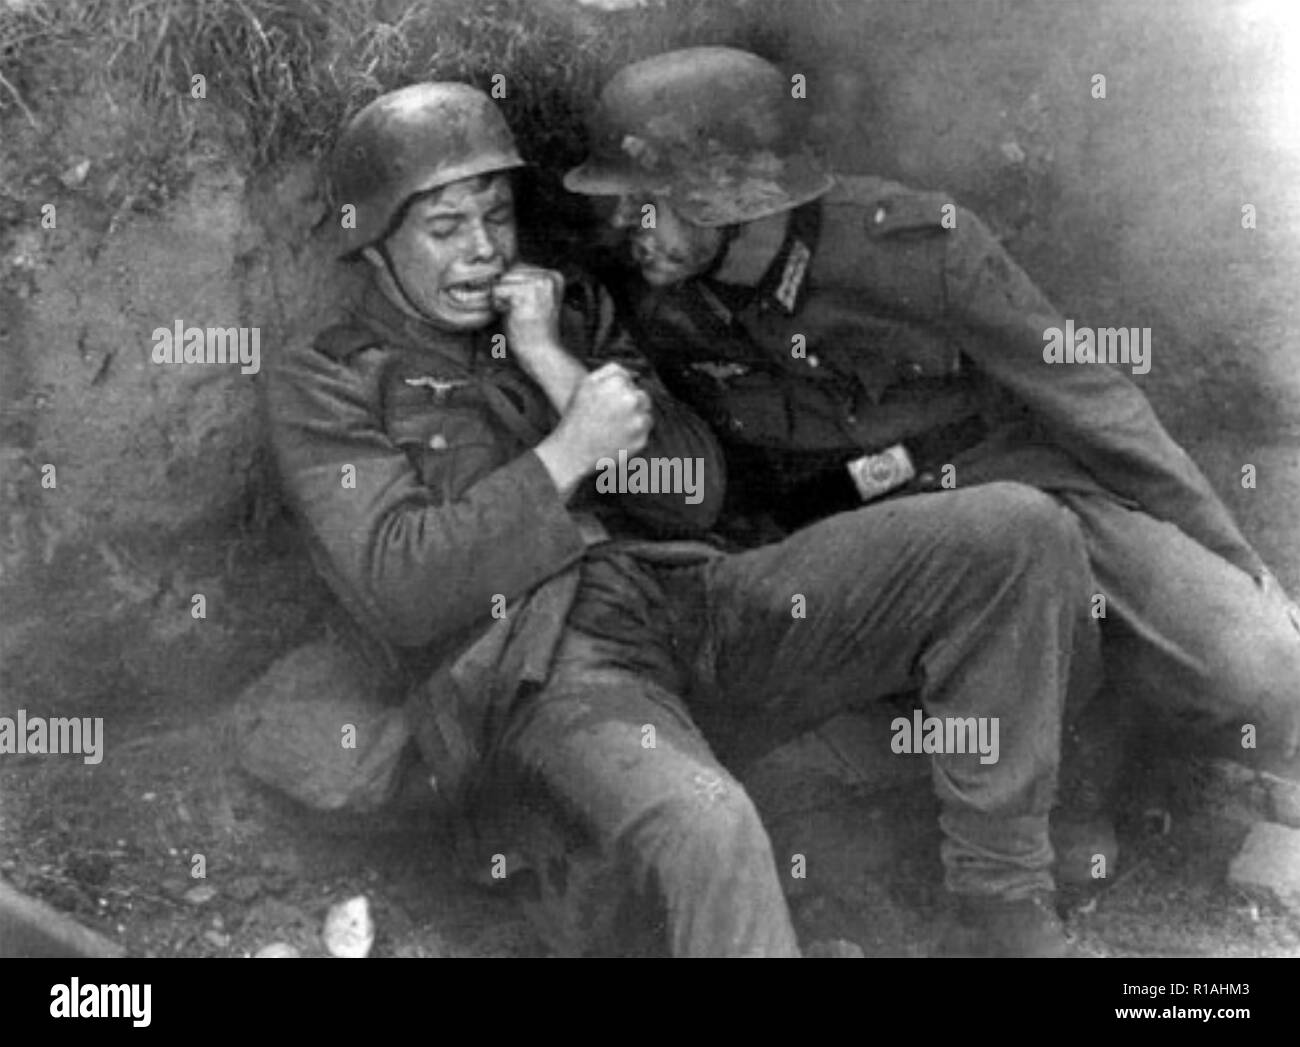 WW1 : choqué shell soldat allemand. Détails inconnus. Banque D'Images